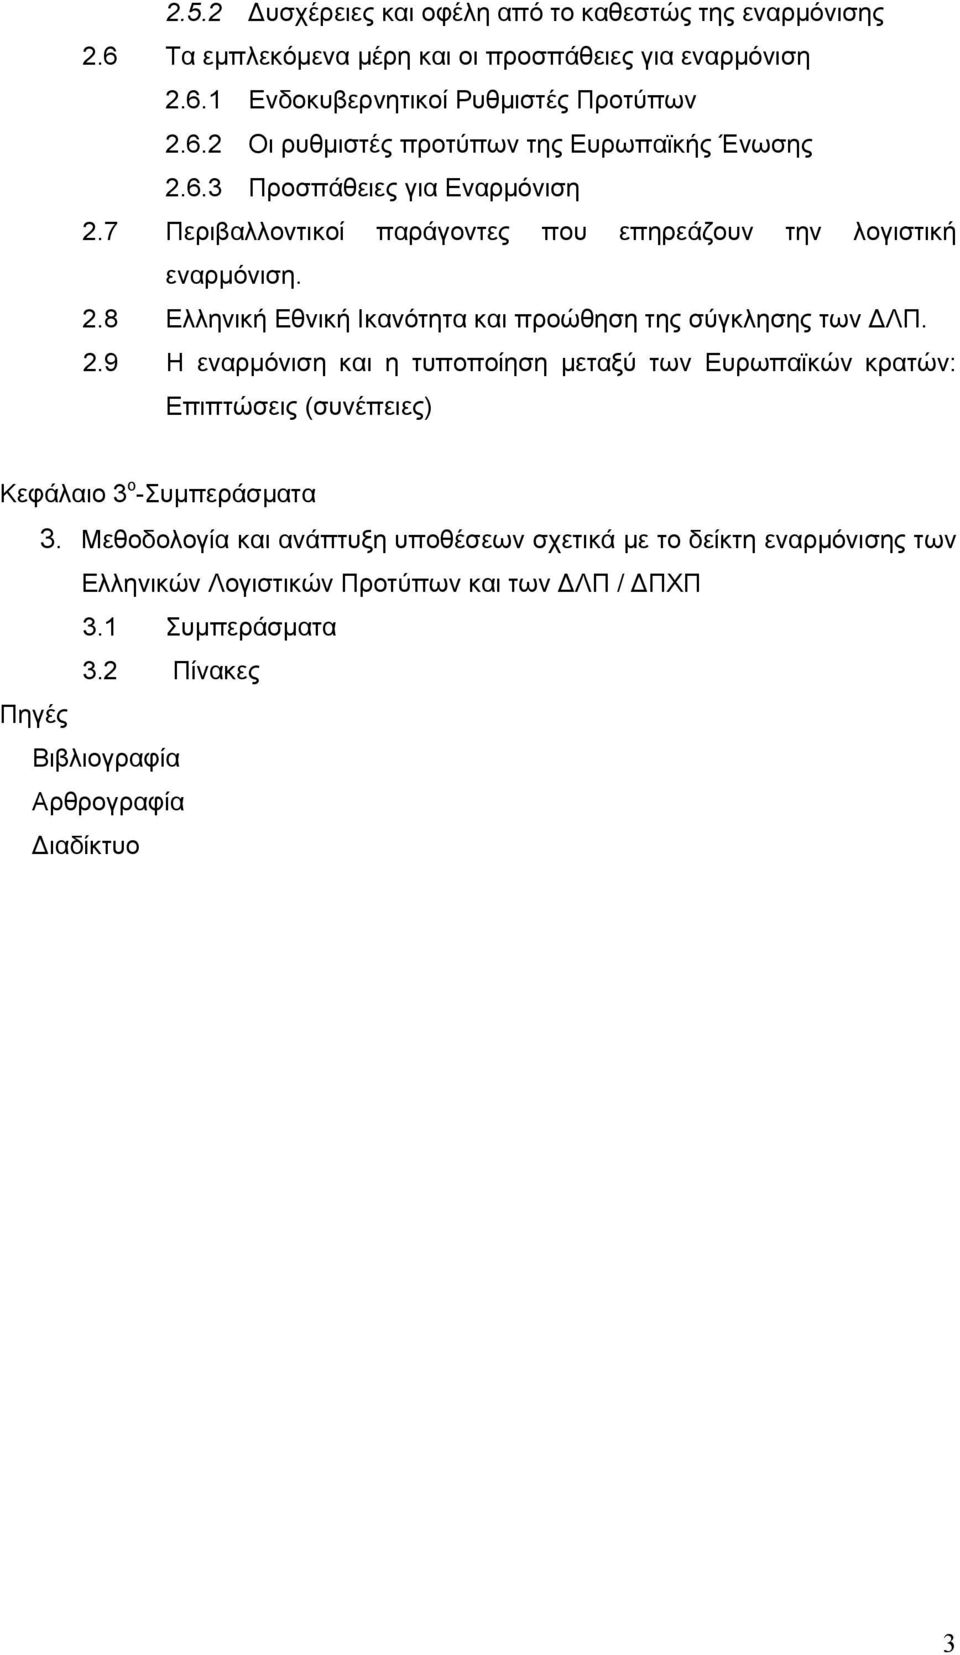 Μεθοδολογία και ανάπτυξη υποθέσεων σχετικά με το δείκτη εναρμόνισης των Ελληνικών Λογιστικών Προτύπων και των ΔΛΠ / ΔΠΧΠ 3.1 Συμπεράσματα 3.